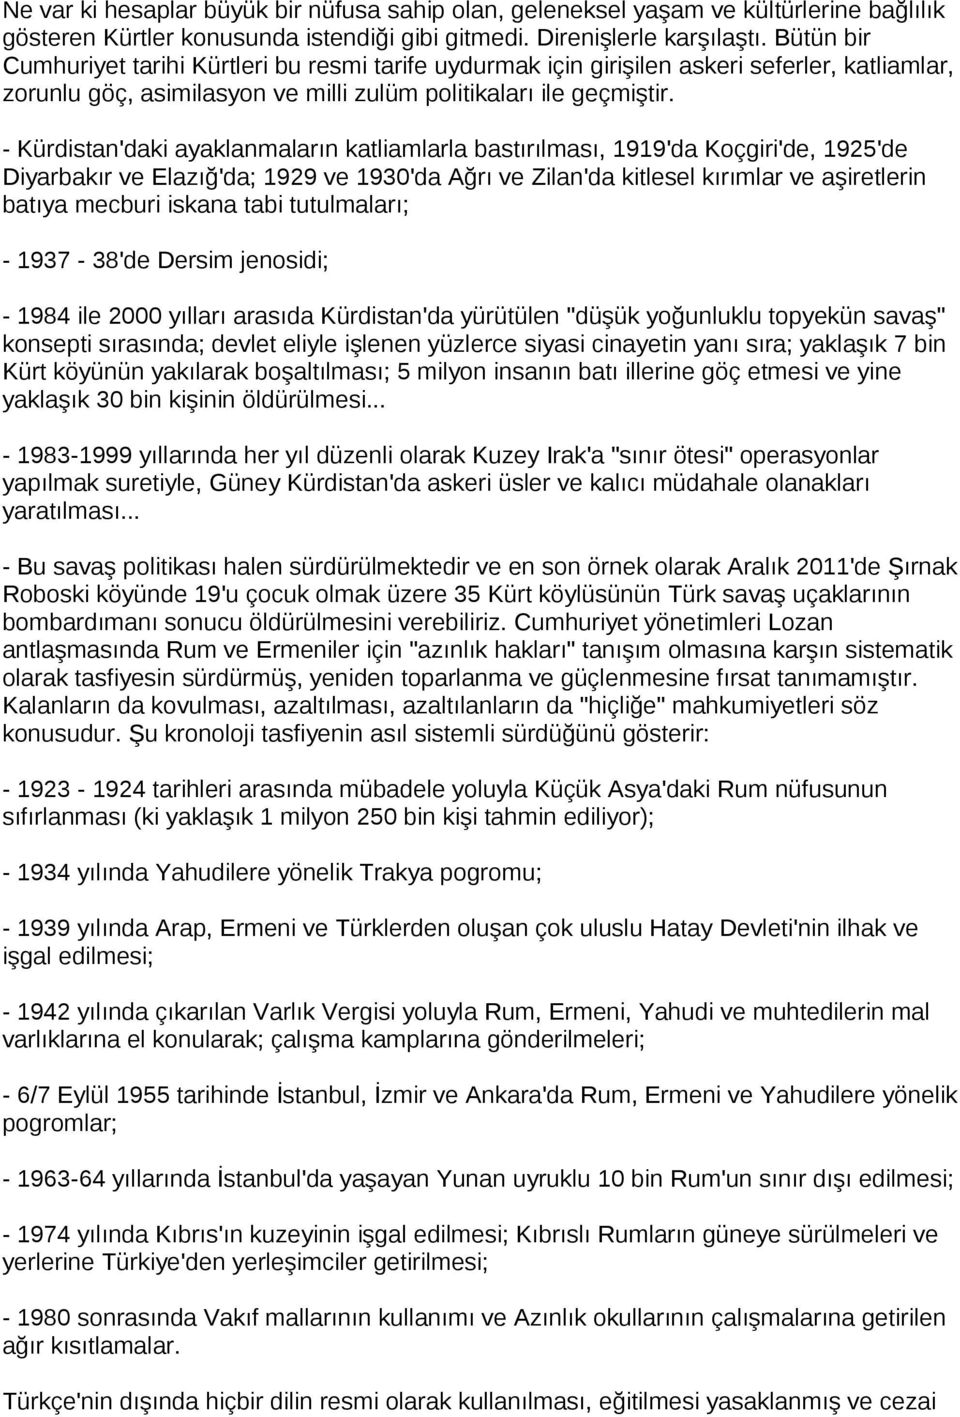 - Kürdistan'daki ayaklanmaların katliamlarla bastırılması, 1919'da Koçgiri'de, 1925'de Diyarbakır ve Elazığ'da; 1929 ve 1930'da Ağrı ve Zilan'da kitlesel kırımlar ve aşiretlerin batıya mecburi iskana